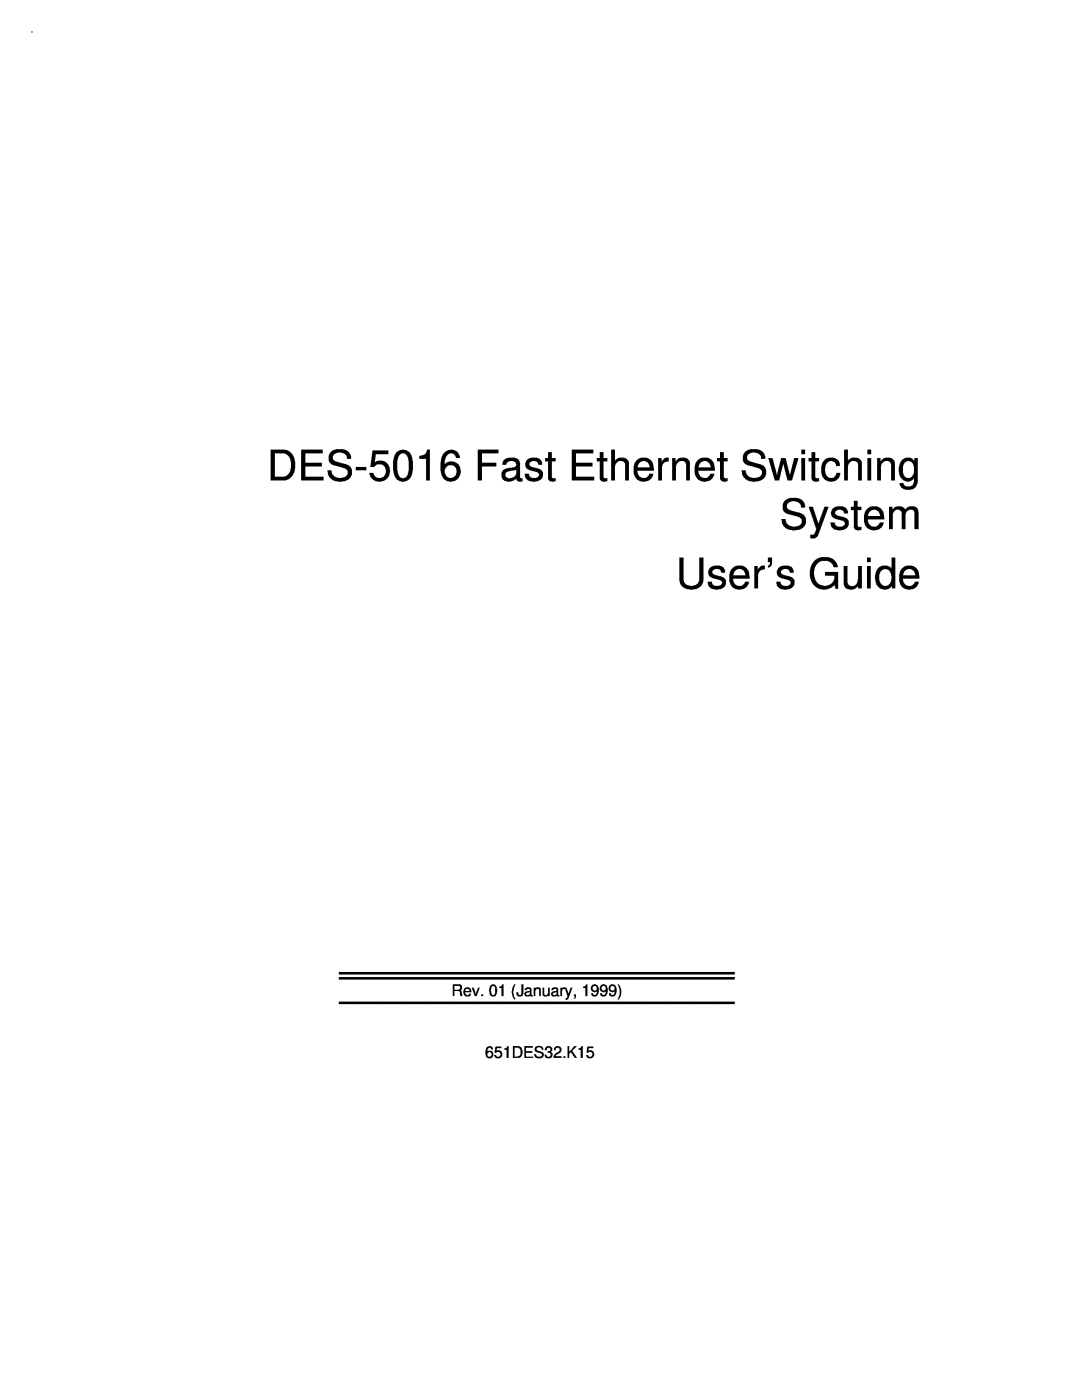 D-Link manual DES-5016 Fast Ethernet Switching System User’s Guide, Rev. 01 January 651DES32.K15 